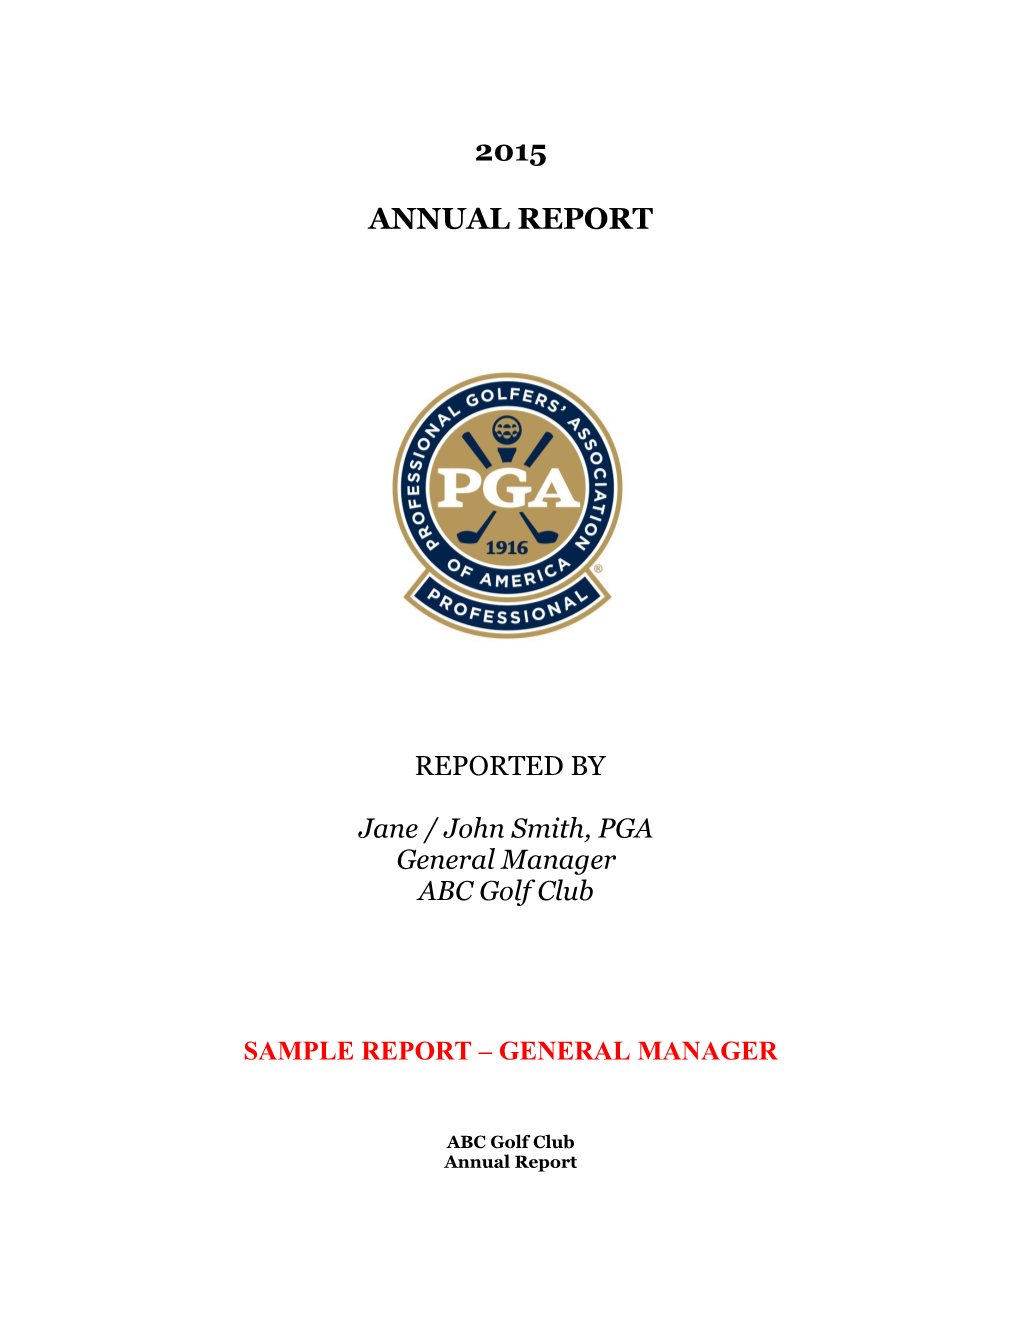 2006 PGA Professional Annual Report